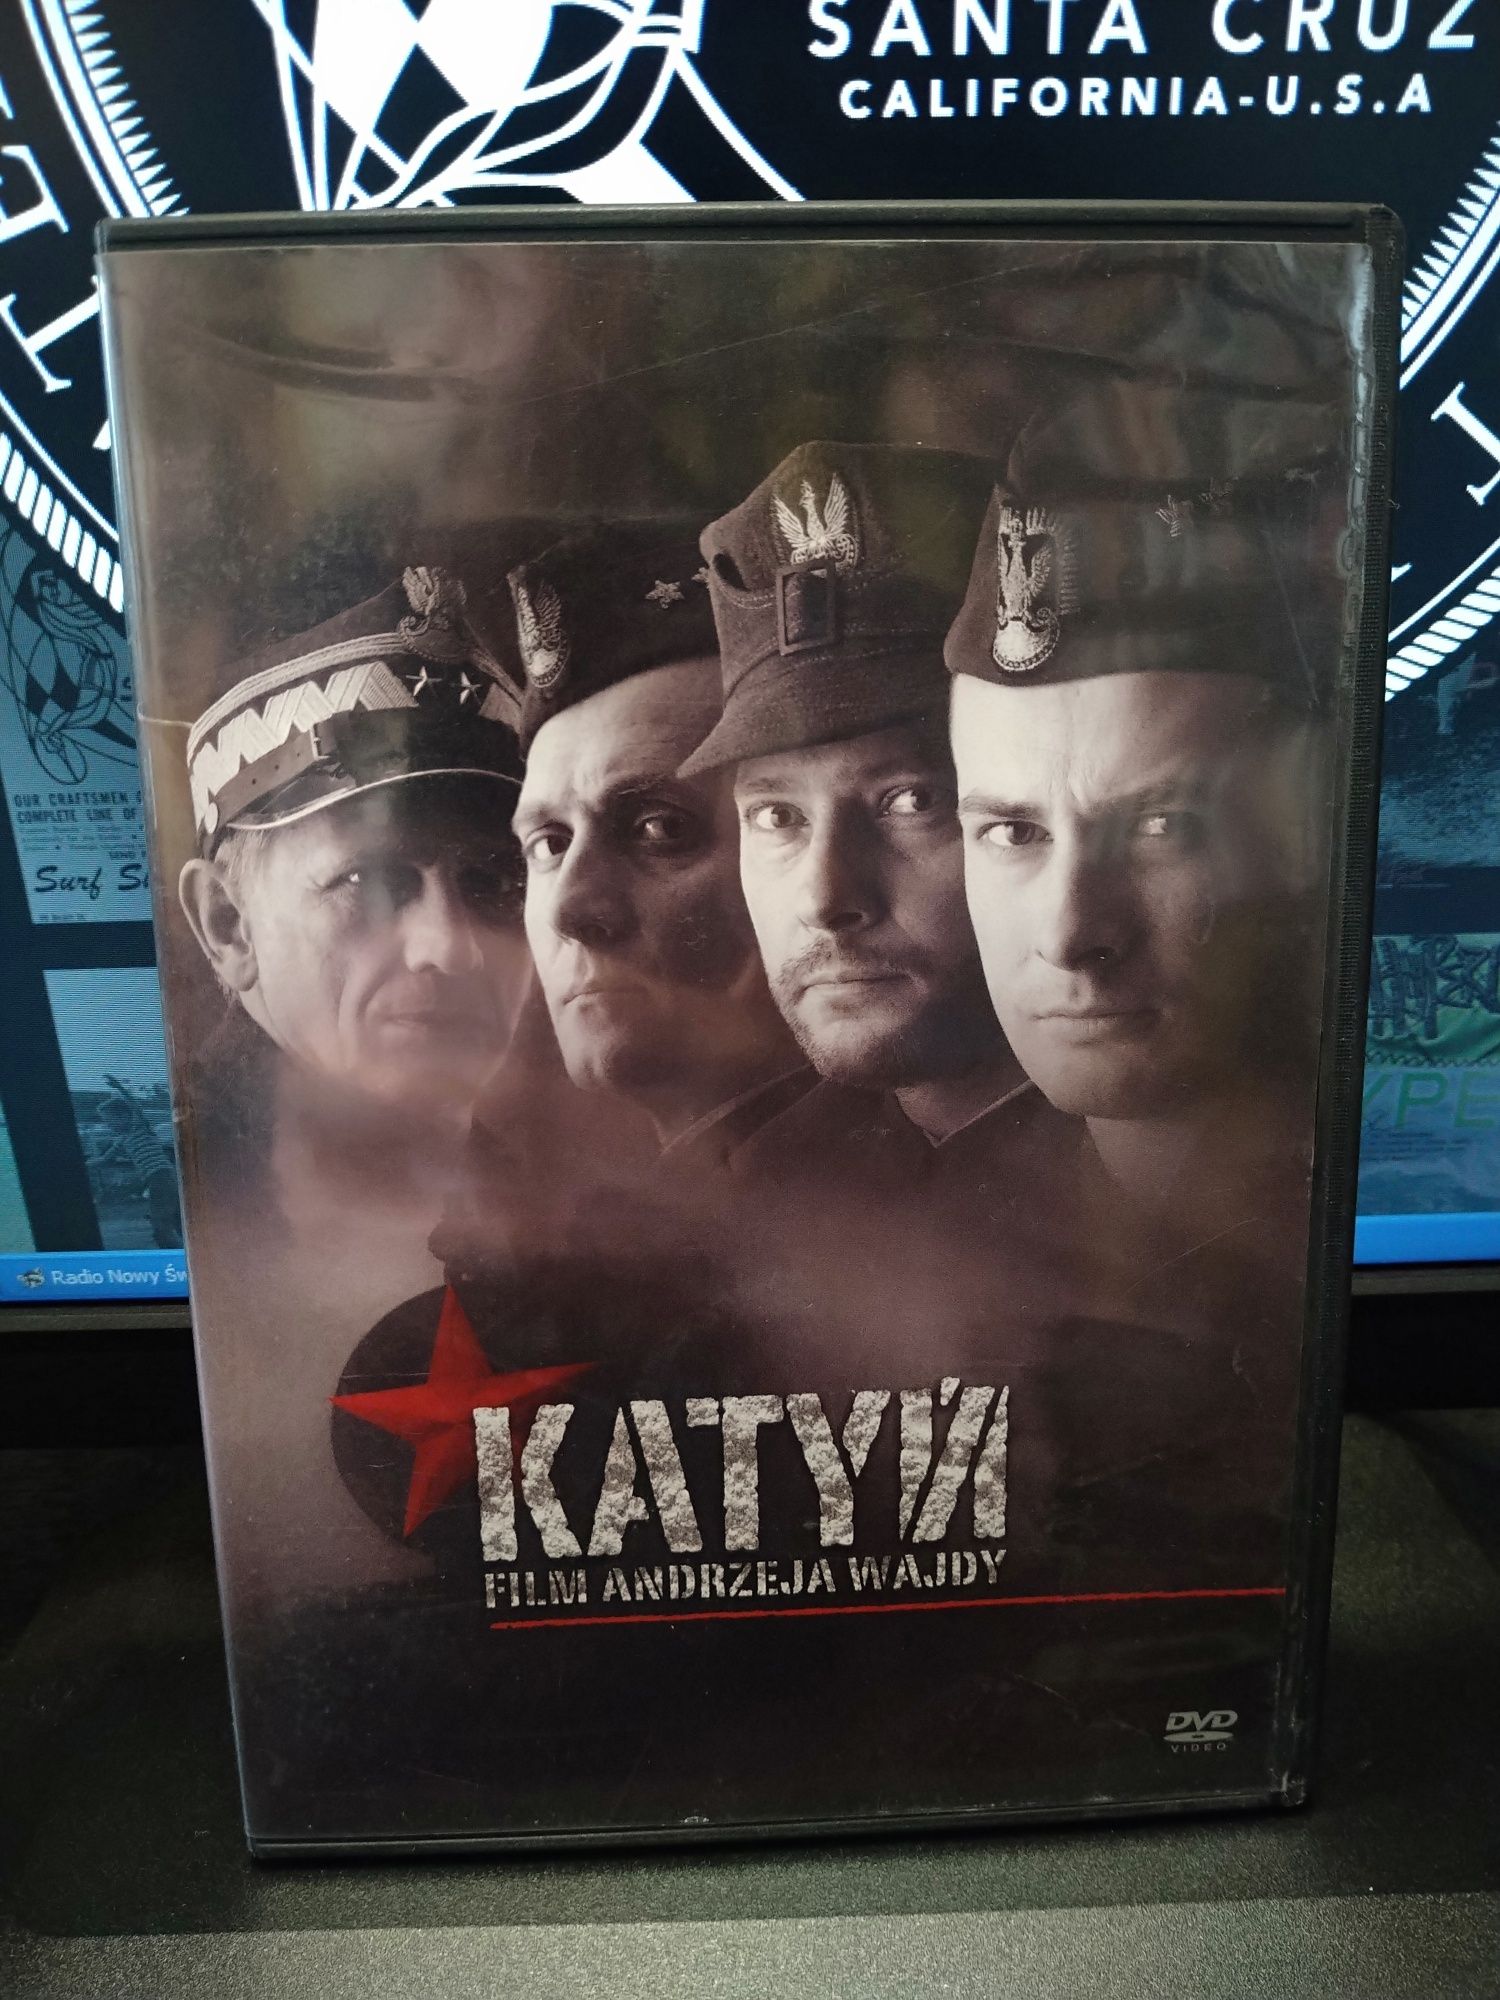 Katyń DVD A.Wajda